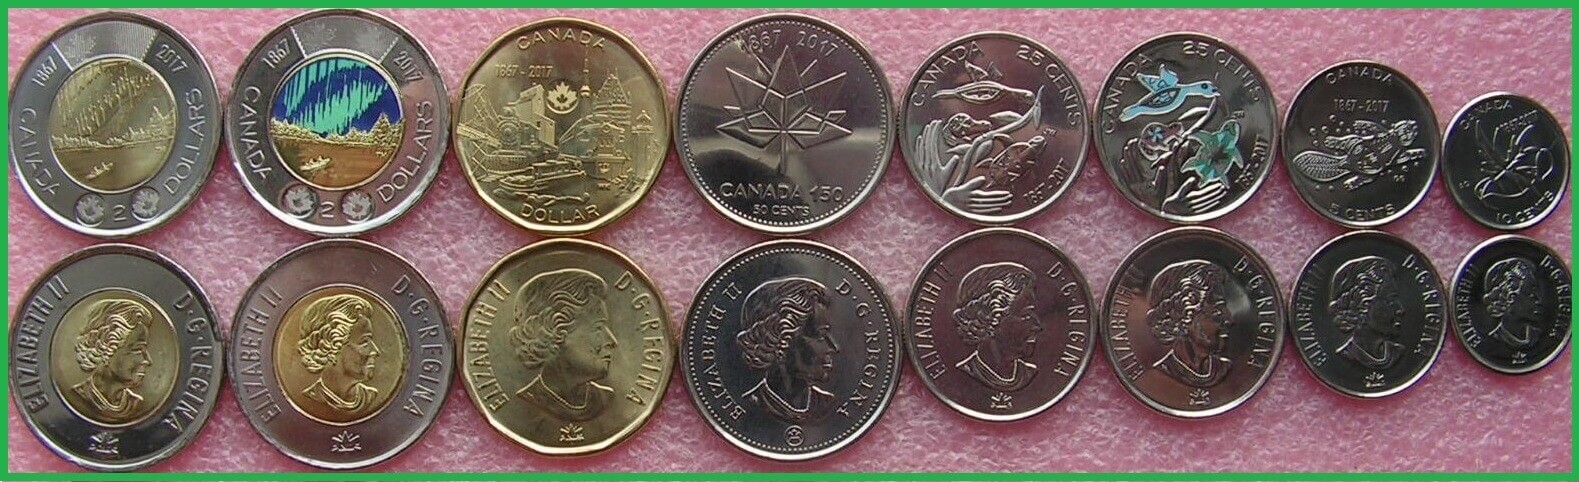 Канада 2017 г. 150 лет конфедерации. Набор из 8 монет